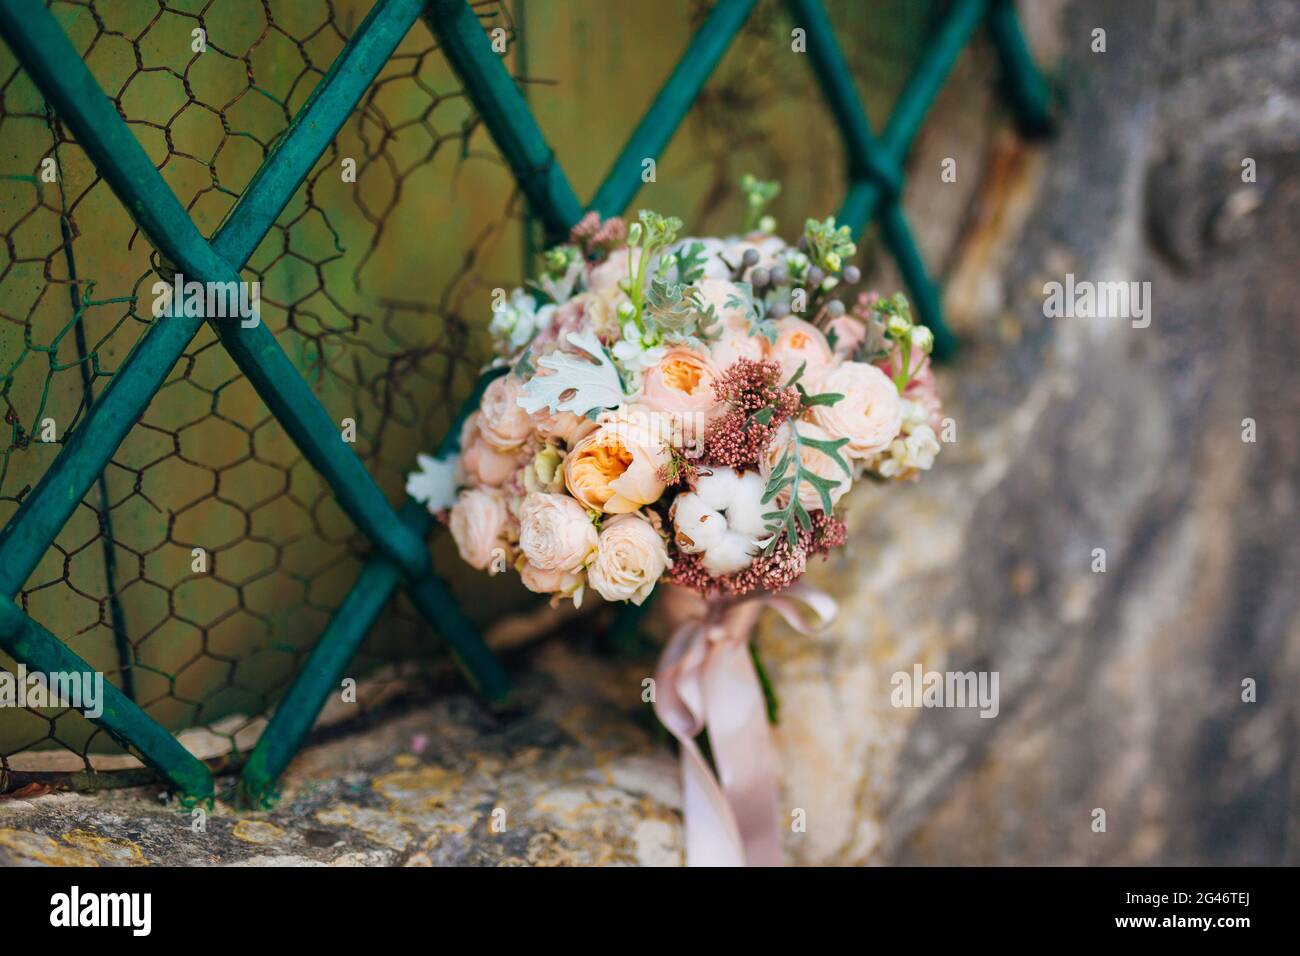 Brautstrauß auf einem Stein Hintergrund Stockfoto